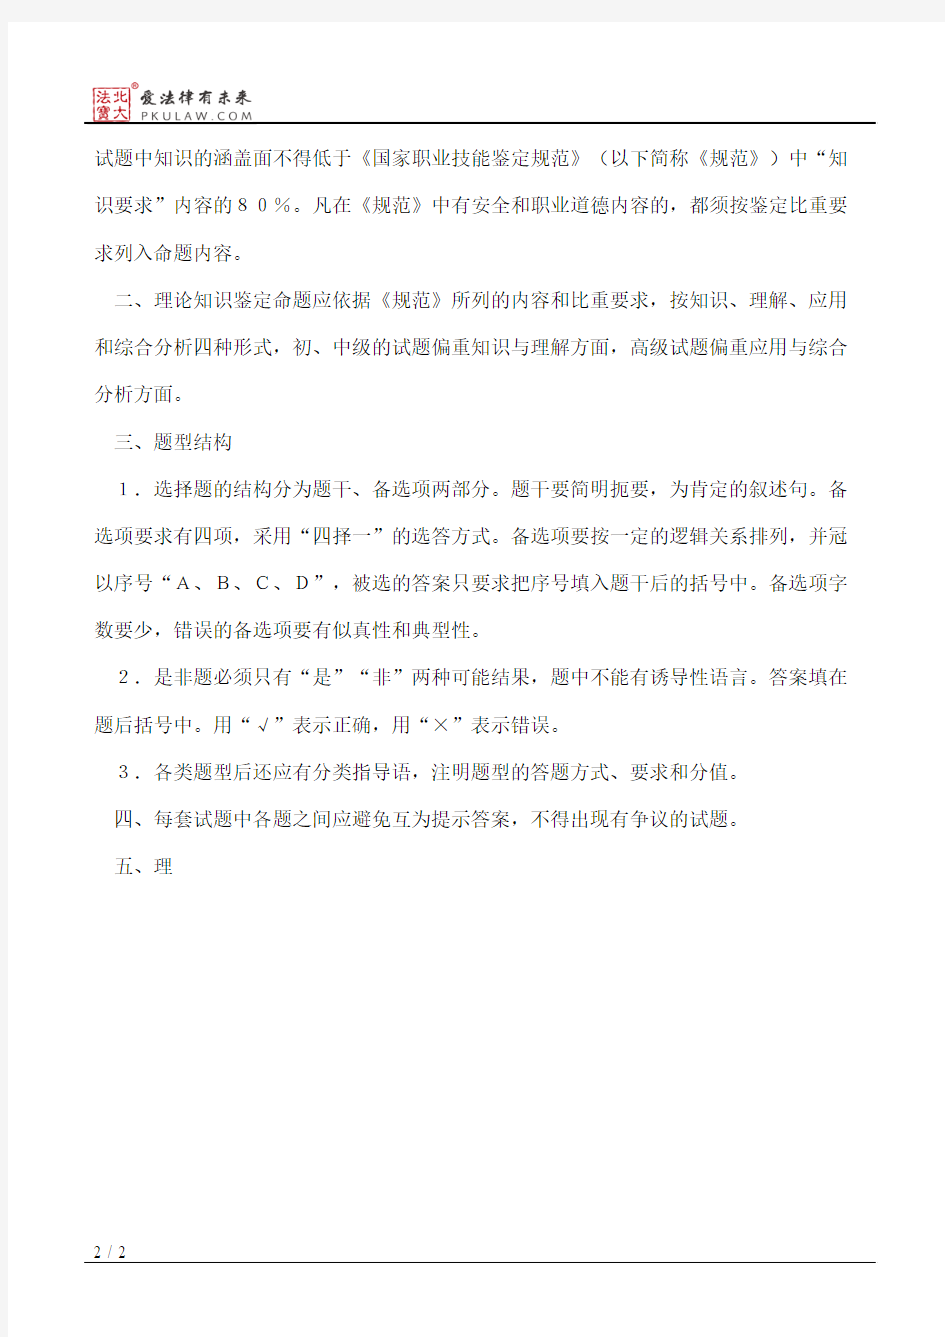 北京市劳动局关于印发职业技能鉴定理论知识和技能操作试题命题要